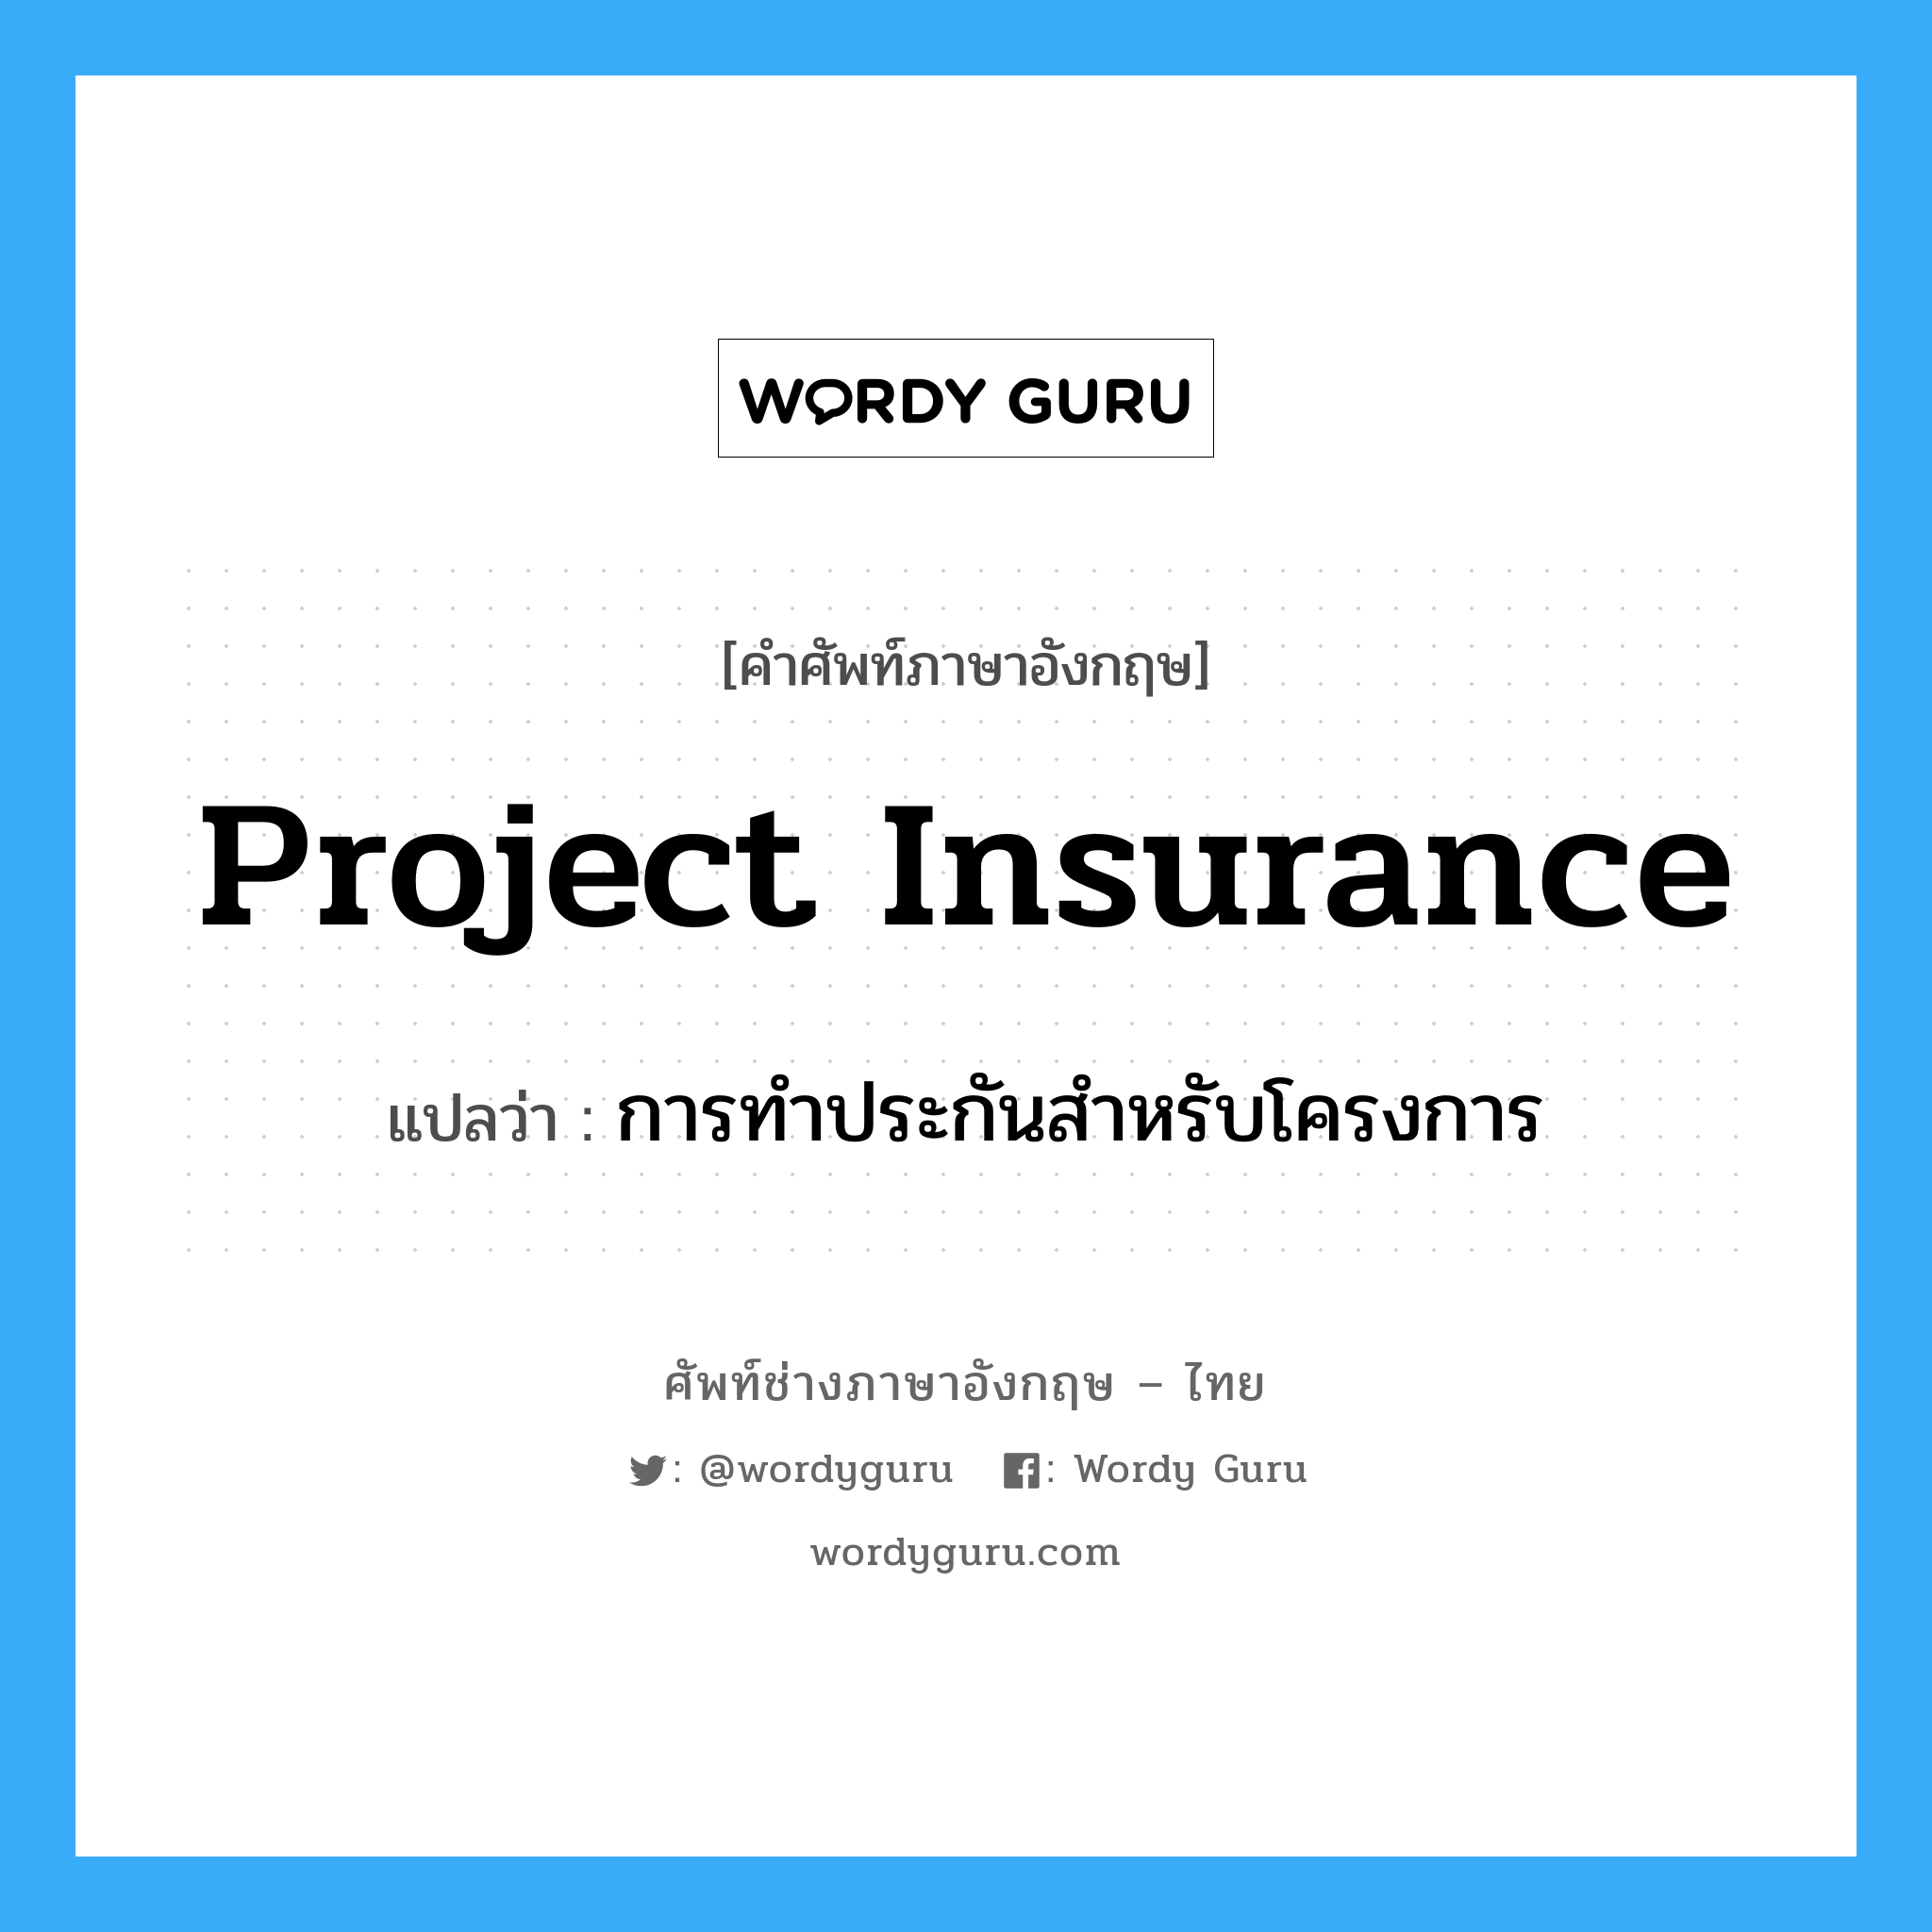 การทำประกันสำหรับโครงการ ภาษาอังกฤษ?, คำศัพท์ช่างภาษาอังกฤษ - ไทย การทำประกันสำหรับโครงการ คำศัพท์ภาษาอังกฤษ การทำประกันสำหรับโครงการ แปลว่า Project Insurance